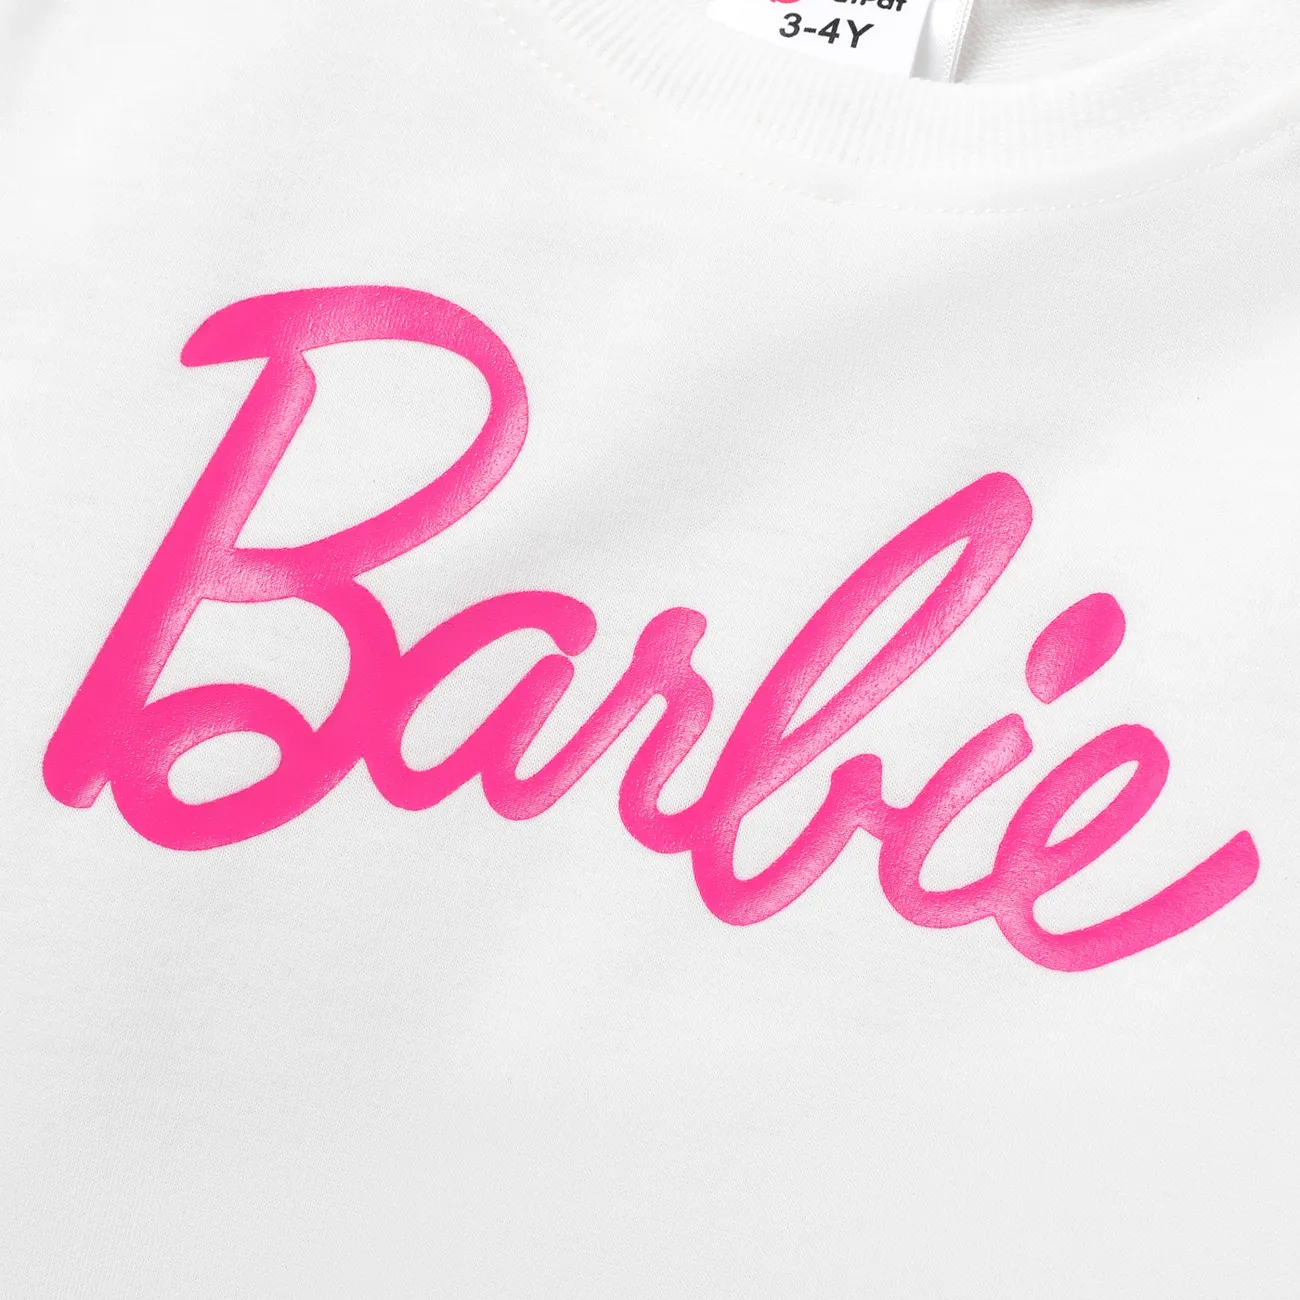 Barbie Criança Menina Entrançado Infantil Fato saia e casaco Branco big image 1